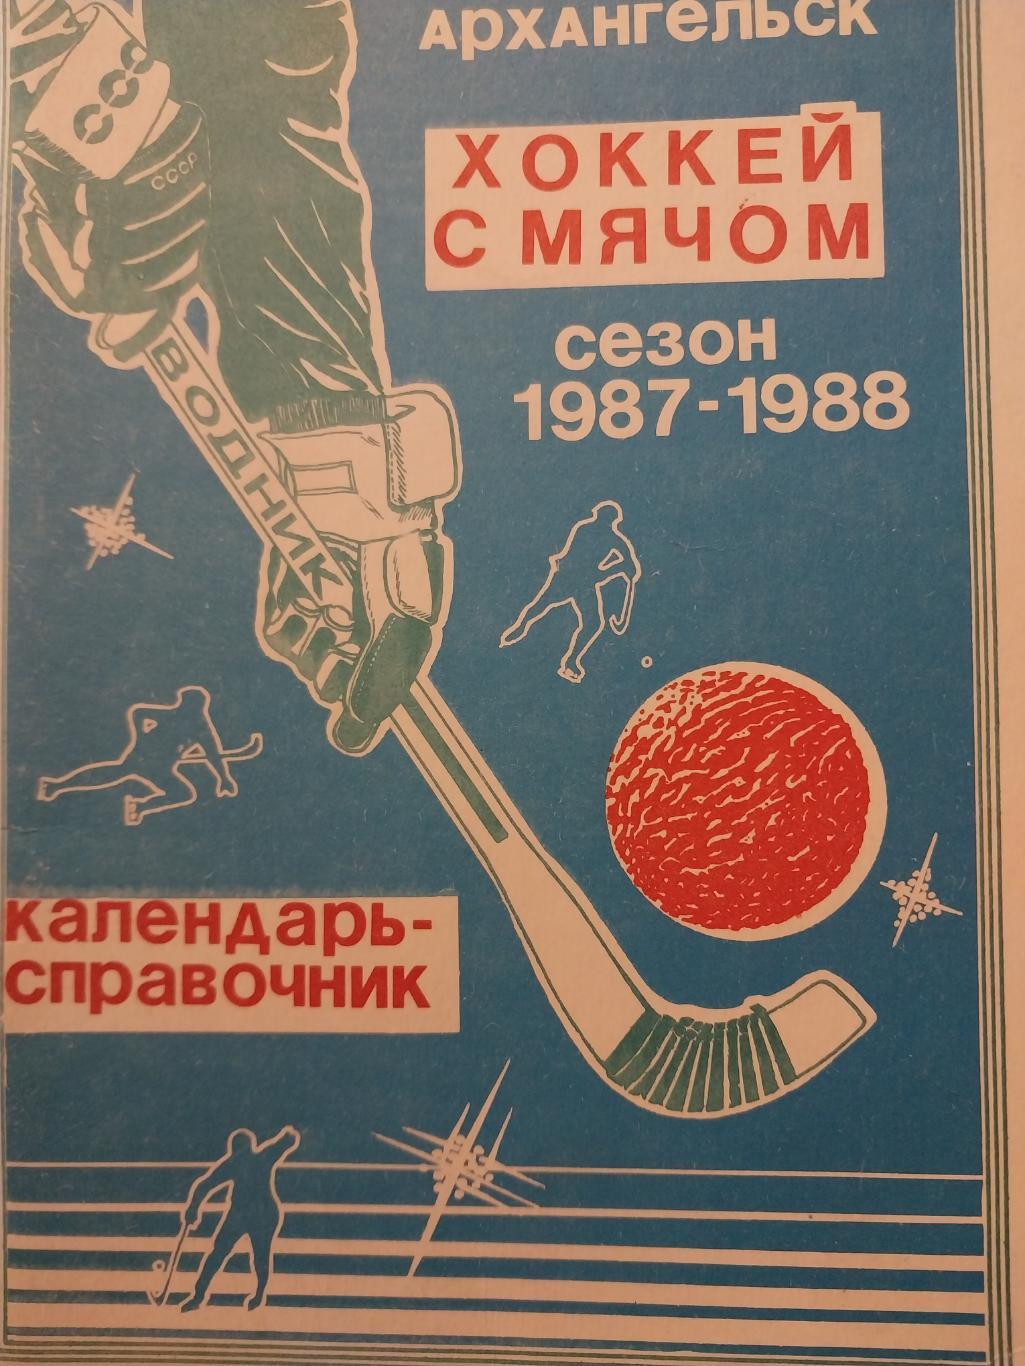 Водник Архангельск 1987-1988. Хоккей с мячом